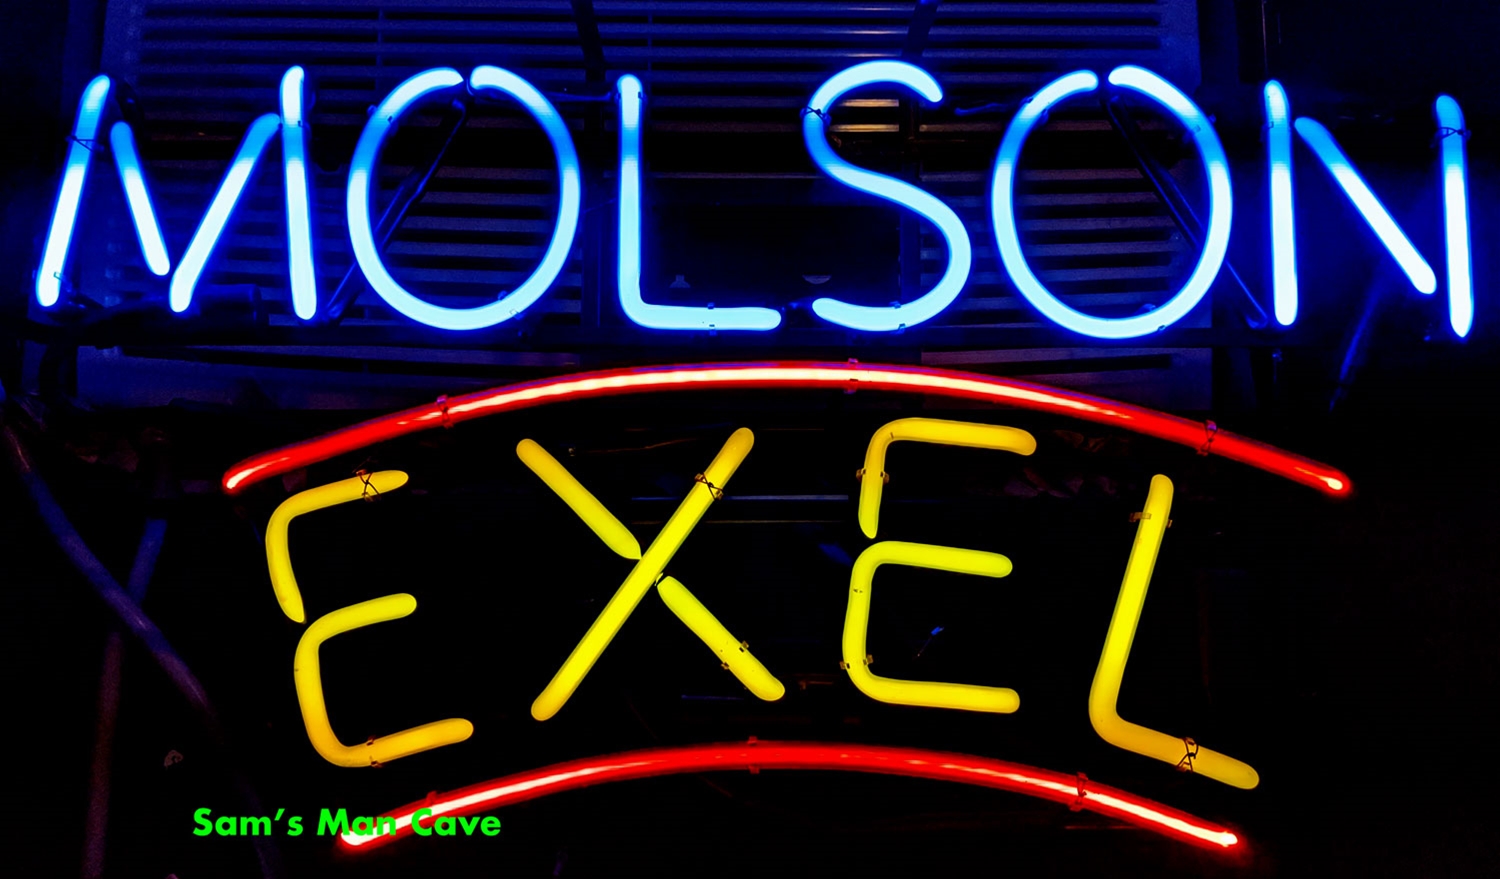 Molson Exel Neon